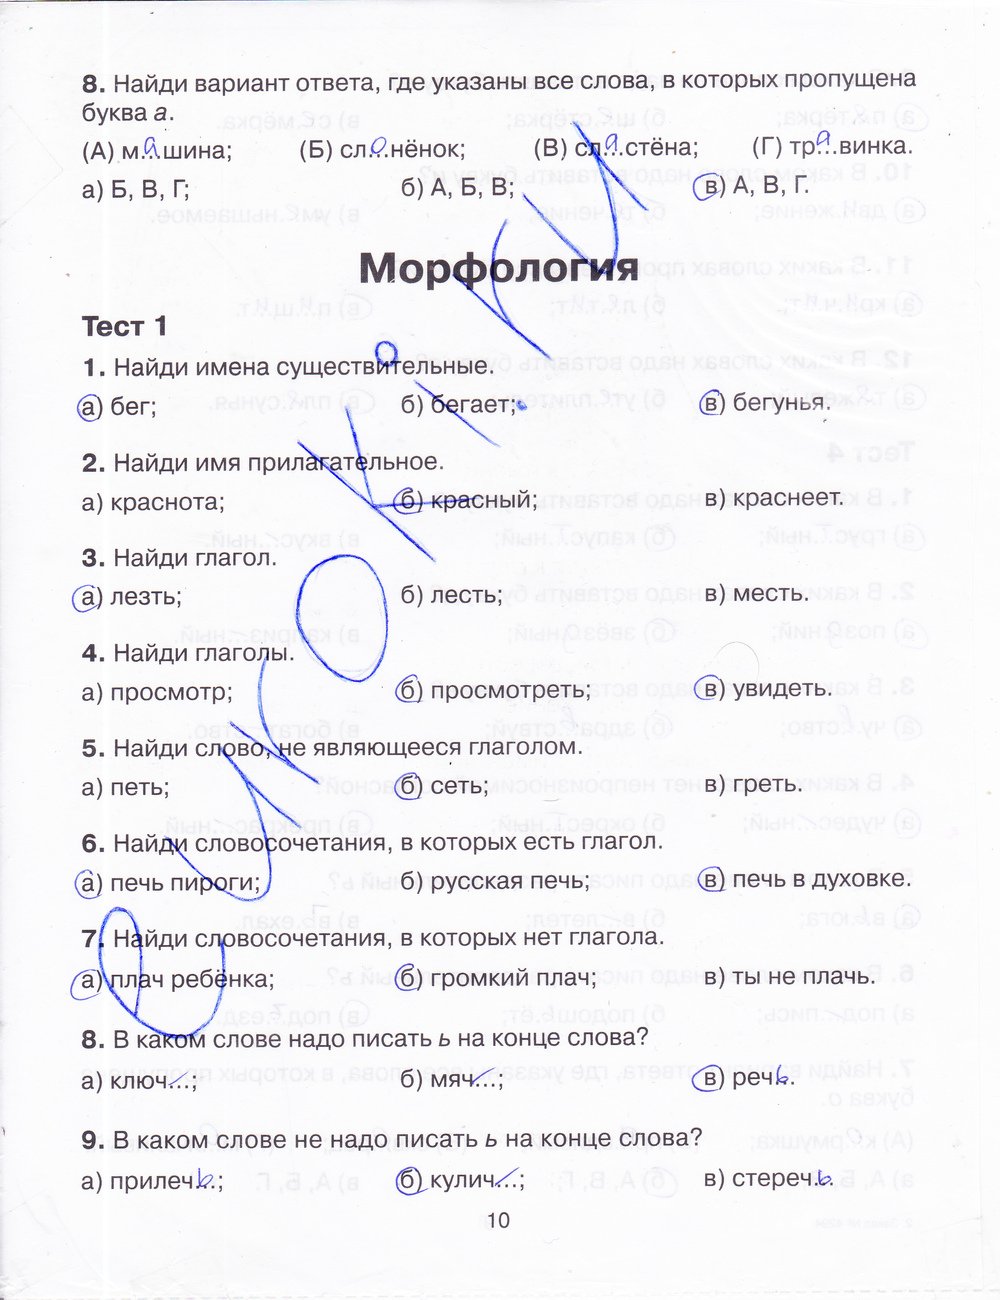 Тренажер русский язык 4 класс шклярова ответы. Домашнее задание ответы тренажер по русскому языку.